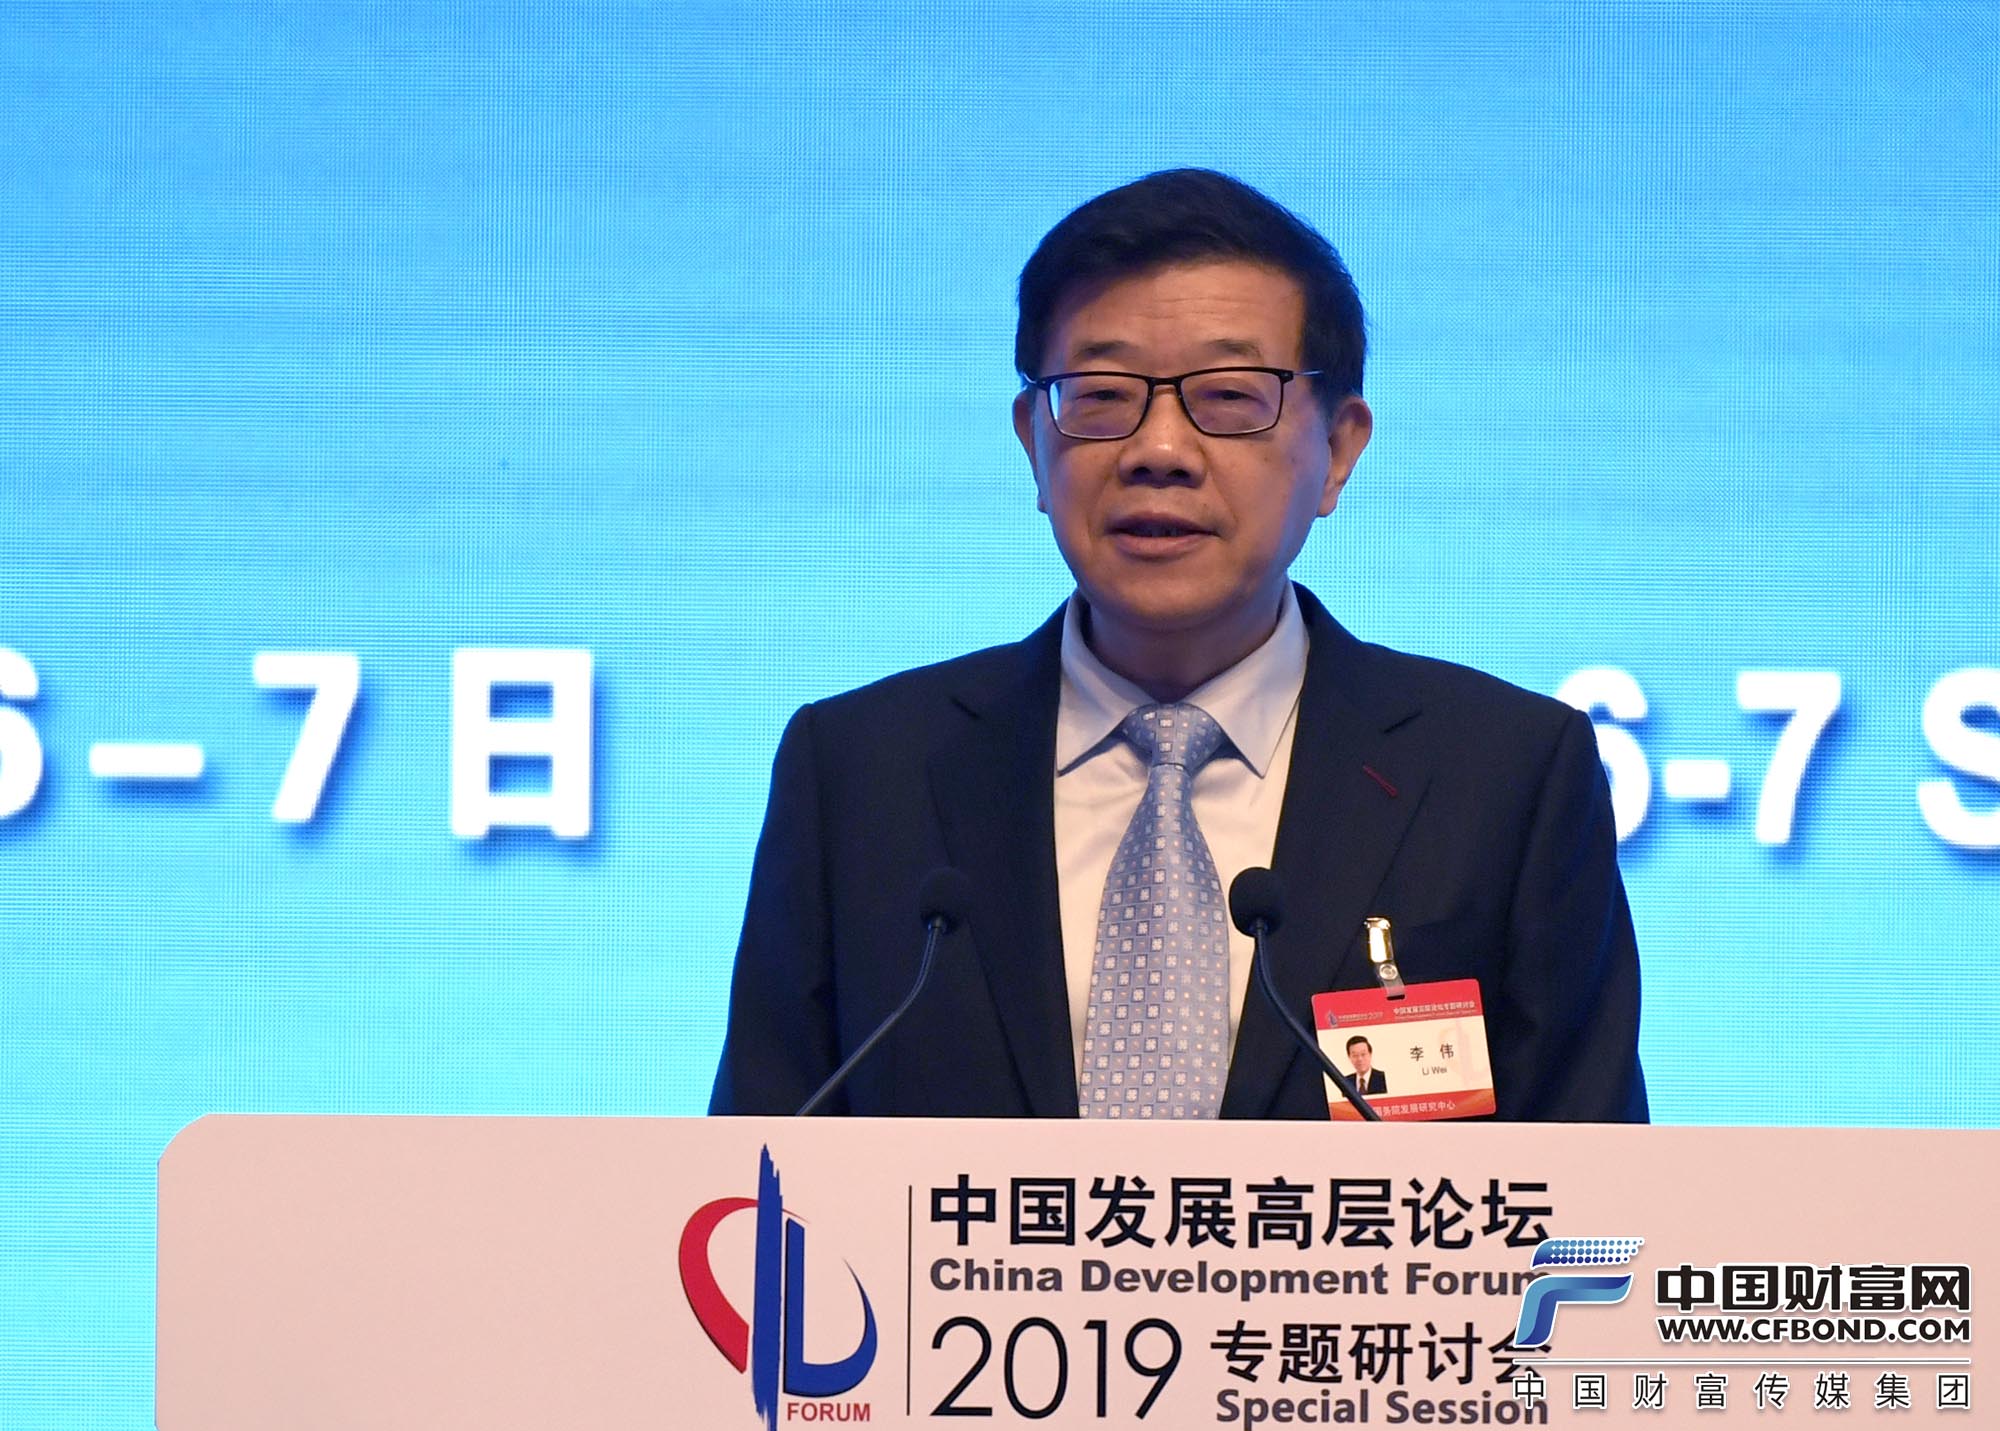 李伟：世界在与中国交往中分享了中国经济的发展成果